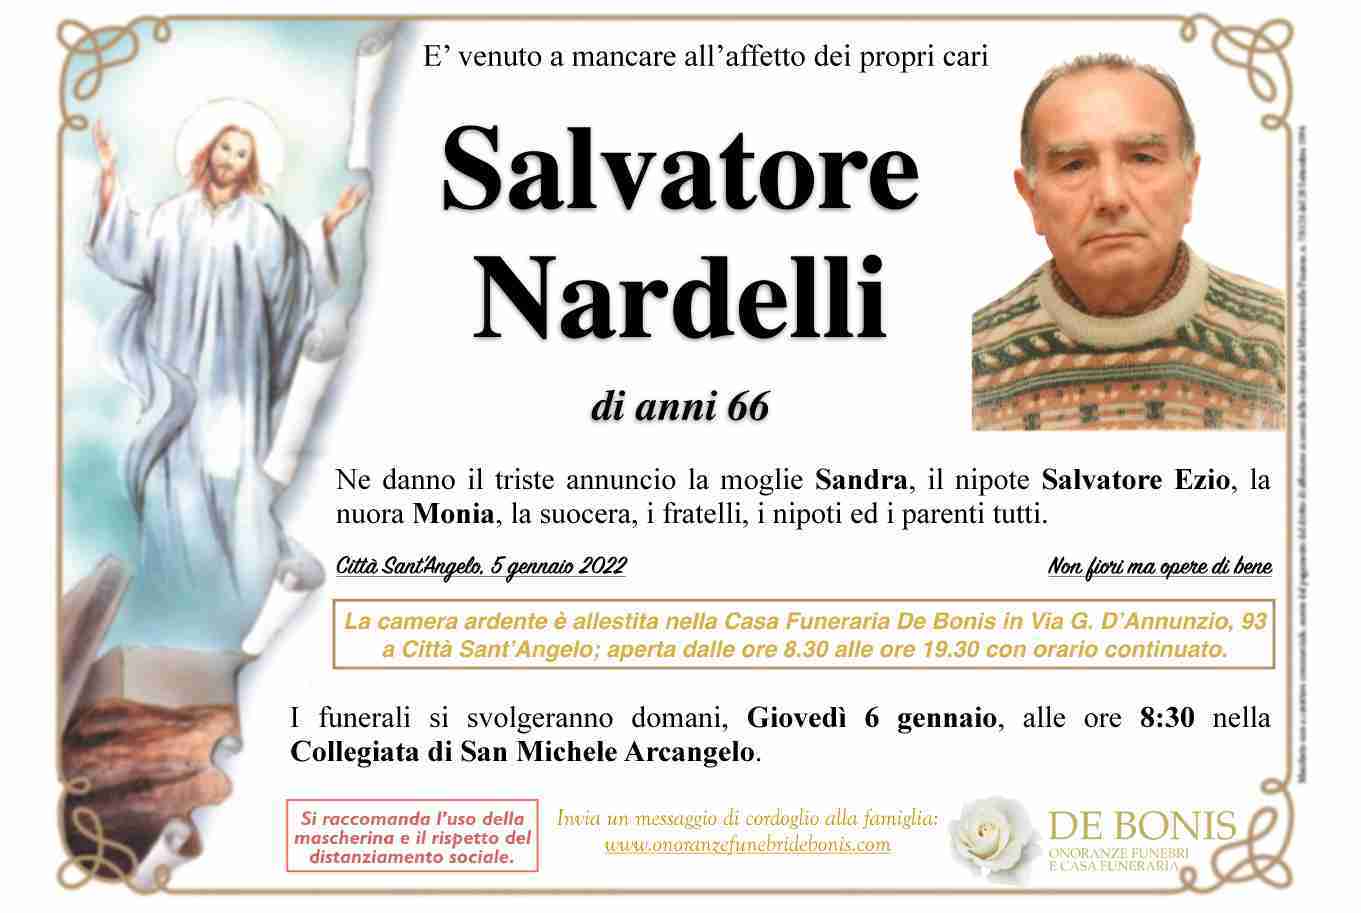 Salvatore Nardelli